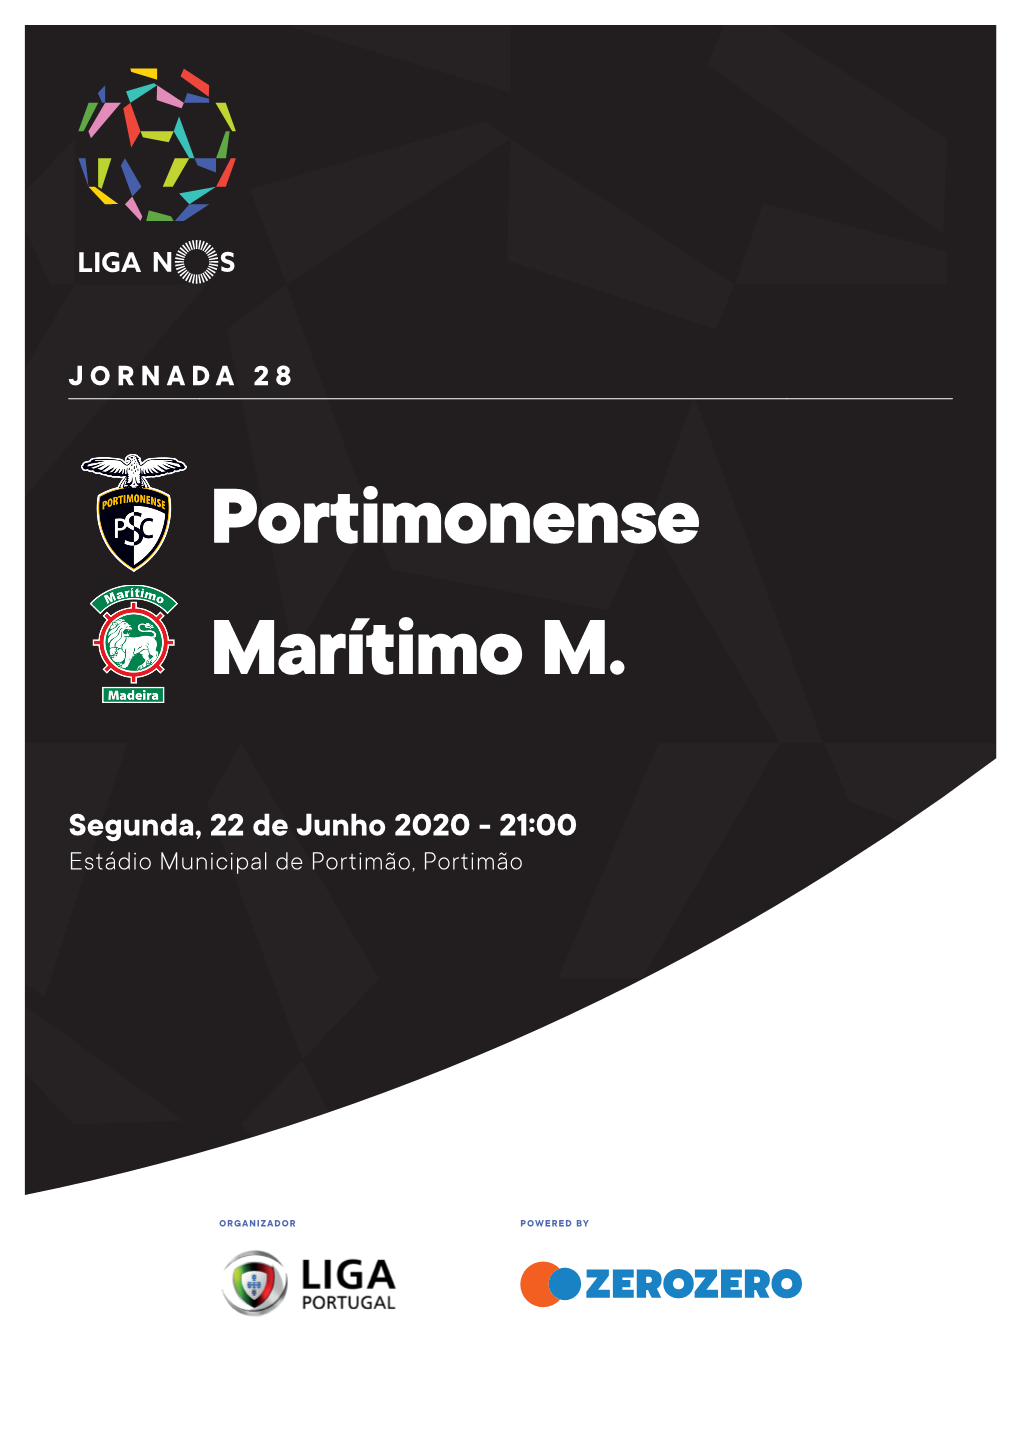 Portimonense Marítimo M